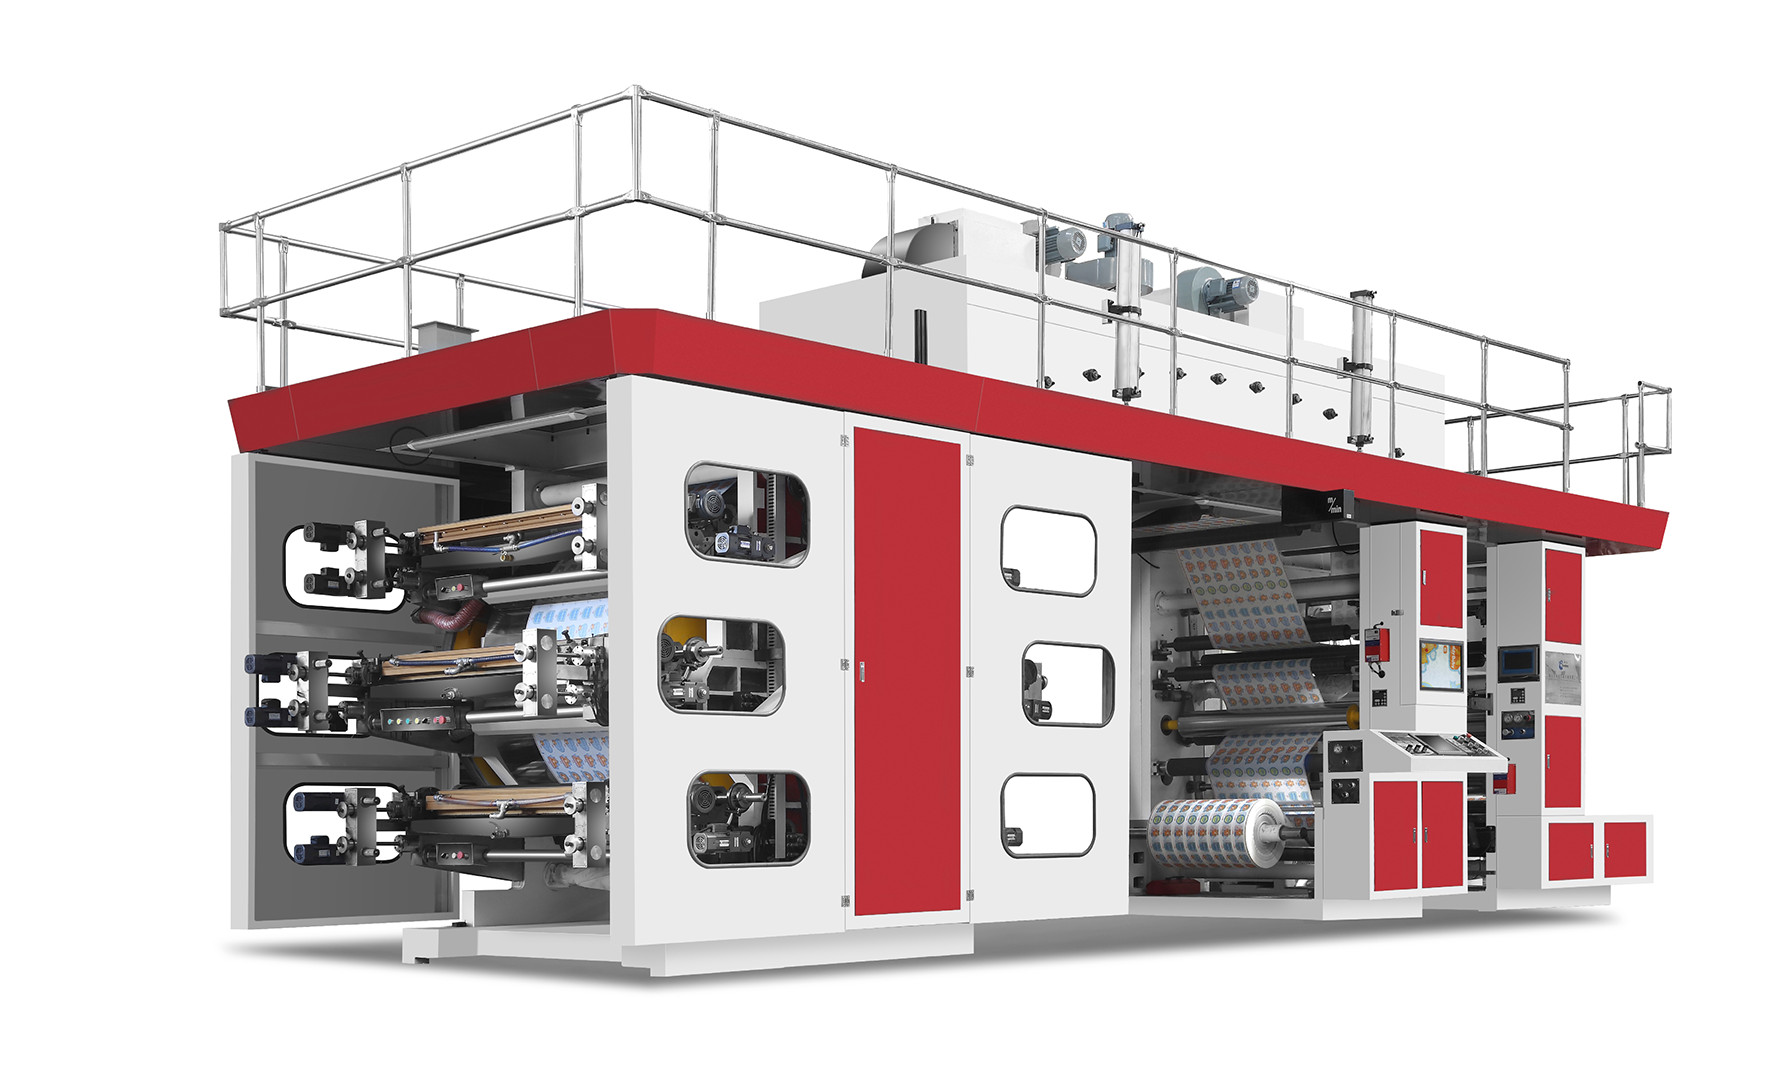 पेशेवर डिज़ाइन चीन चार रंग गुणवत्ता सीआई (सेंट्रल ड्रम) फ्लेक्सो पेपर प्रिंटिंग मशीन